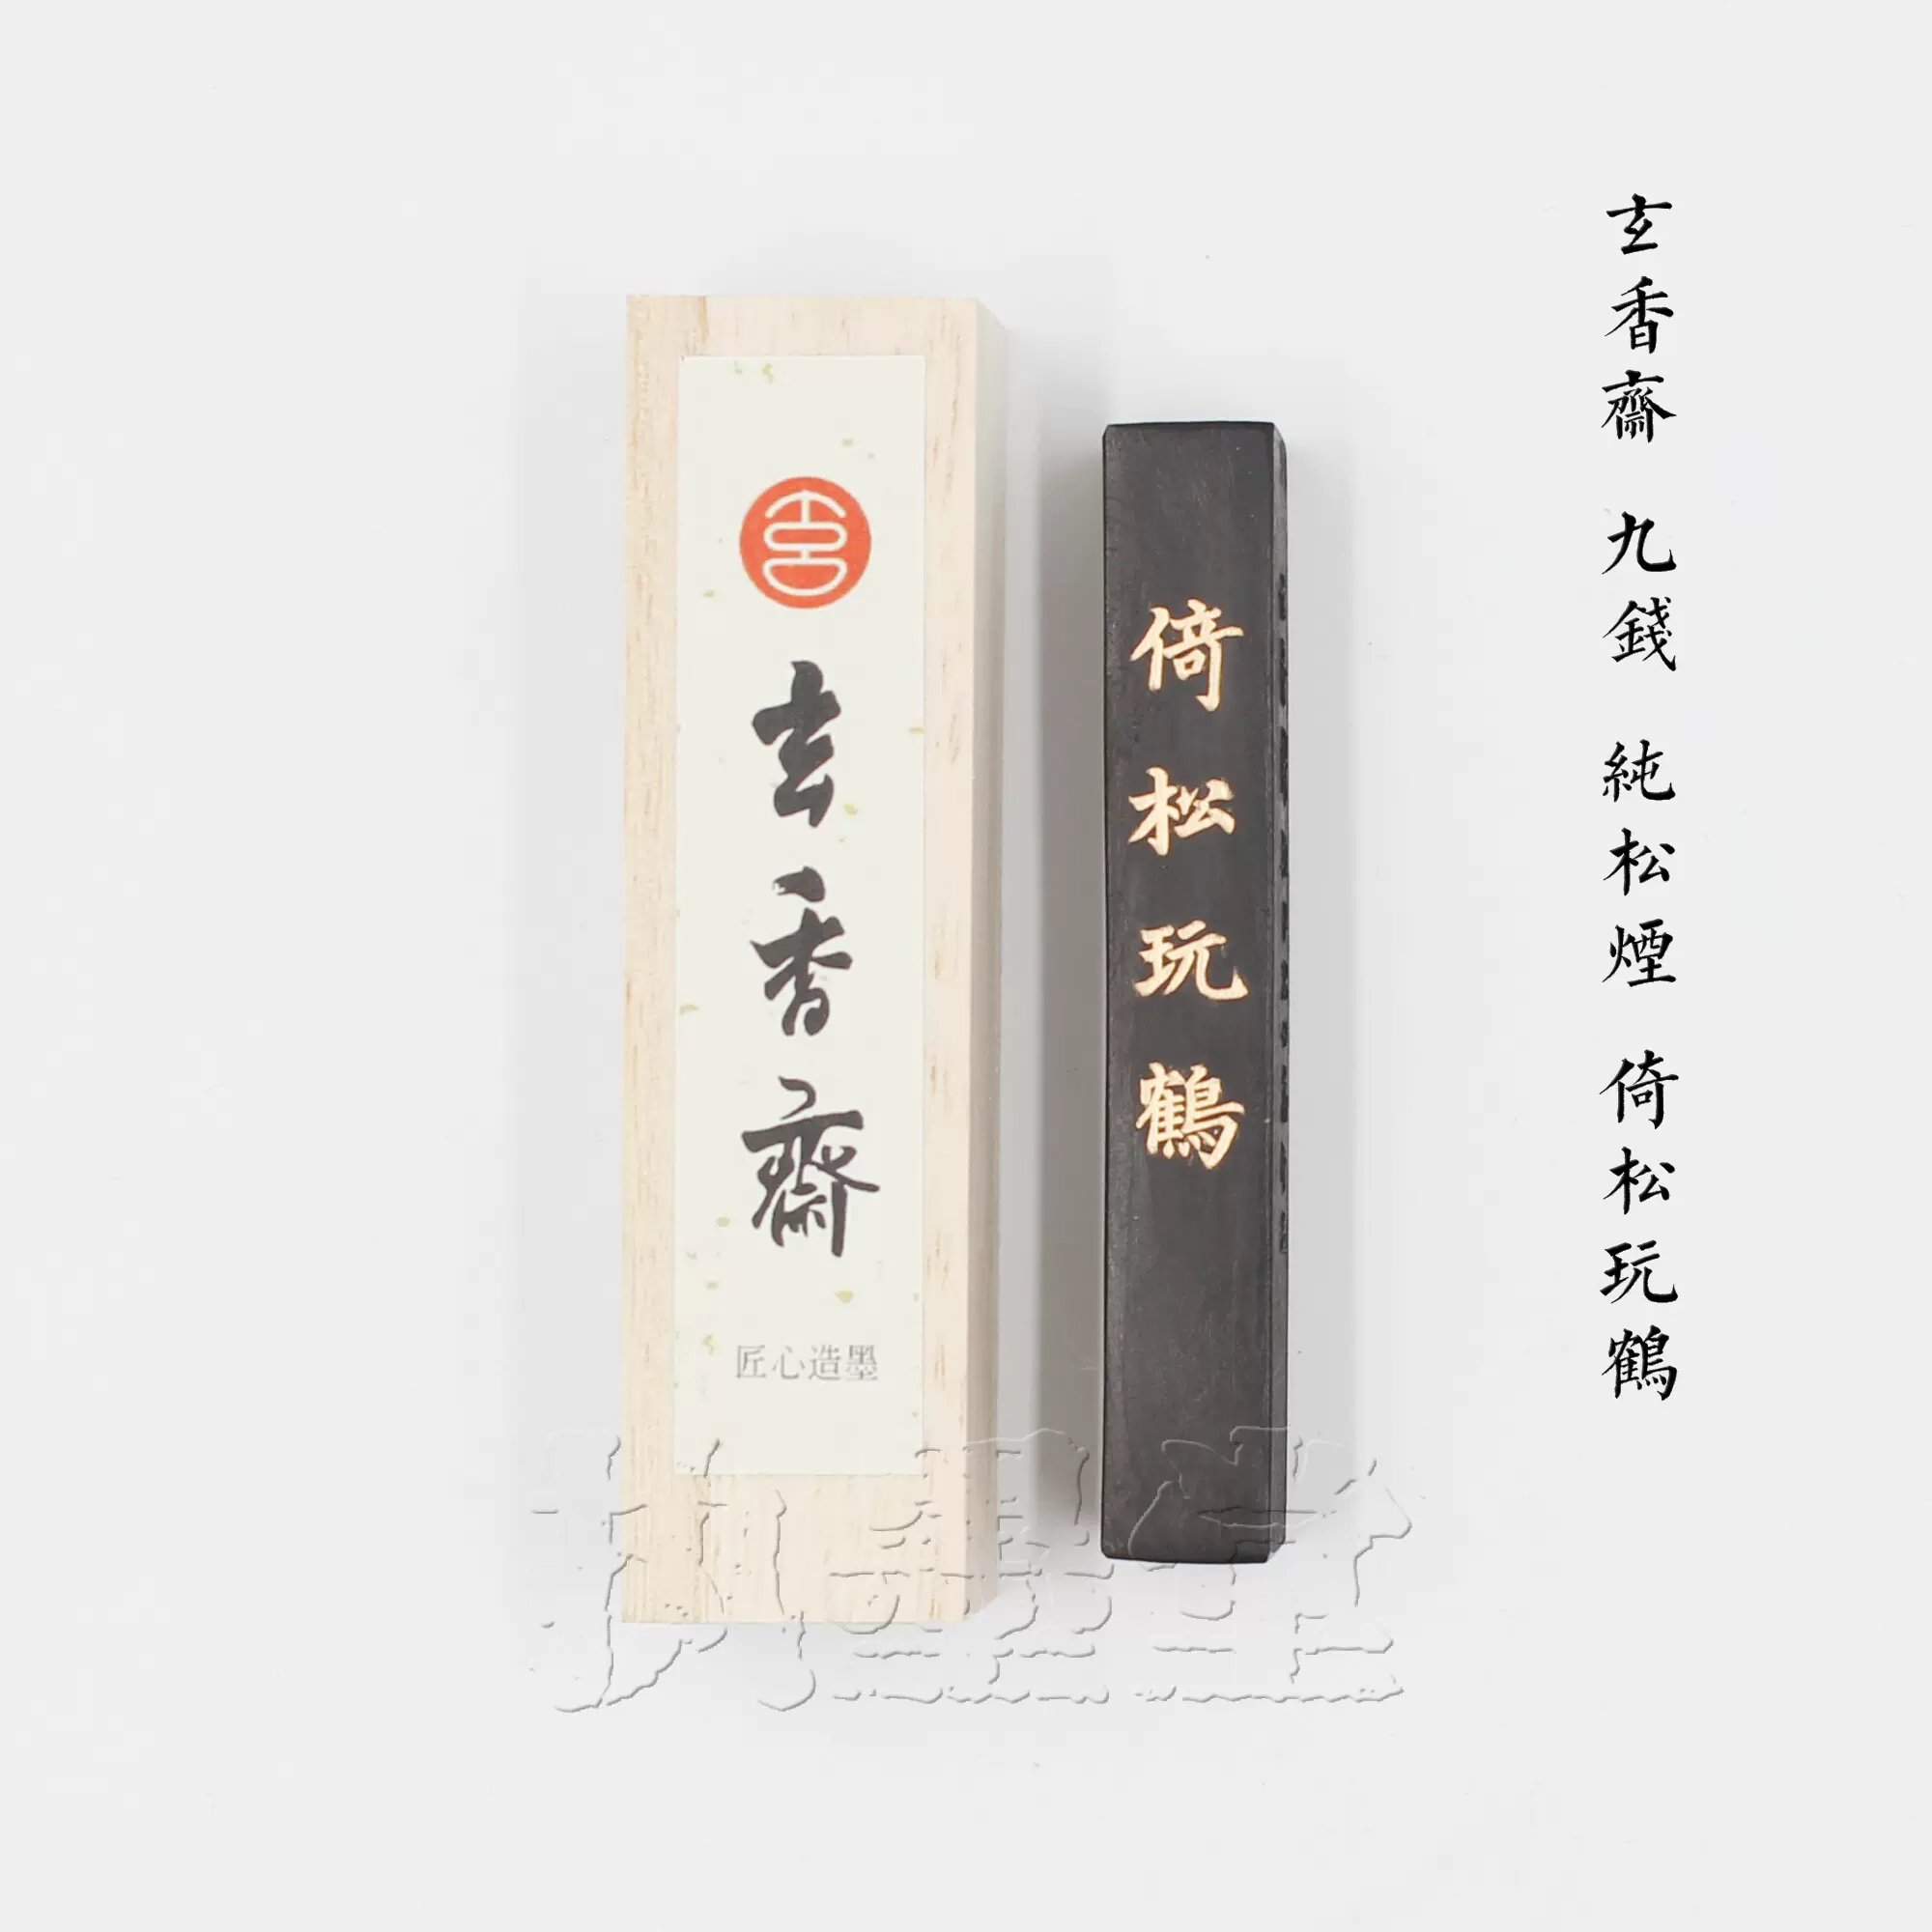 鲁迅诗上海墨厂85年1两油烟101上级墨块文房墨锭收藏书画墨条-Taobao